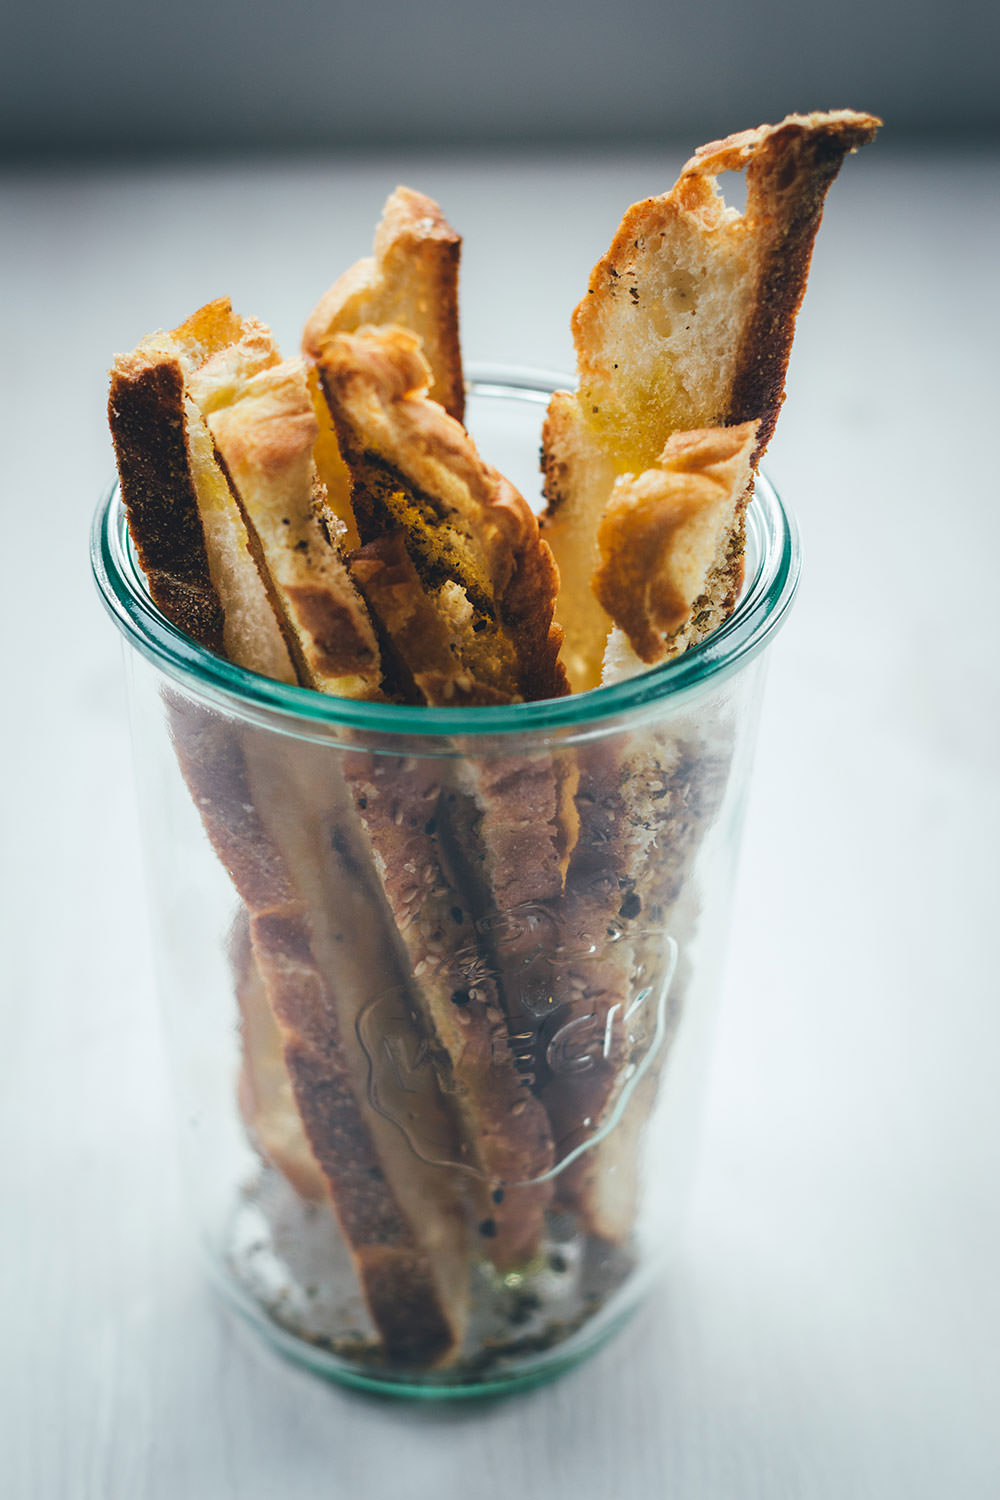 Rezept für selbst gemachten milden Ajvar | auf Vorrat einkochen und das Sommergemüse konservieren | moeyskitchen.com #ajvar #einmachen #einkochen #canning #paprika #aubergine #sommerrezepte #rezepte #foodblogger